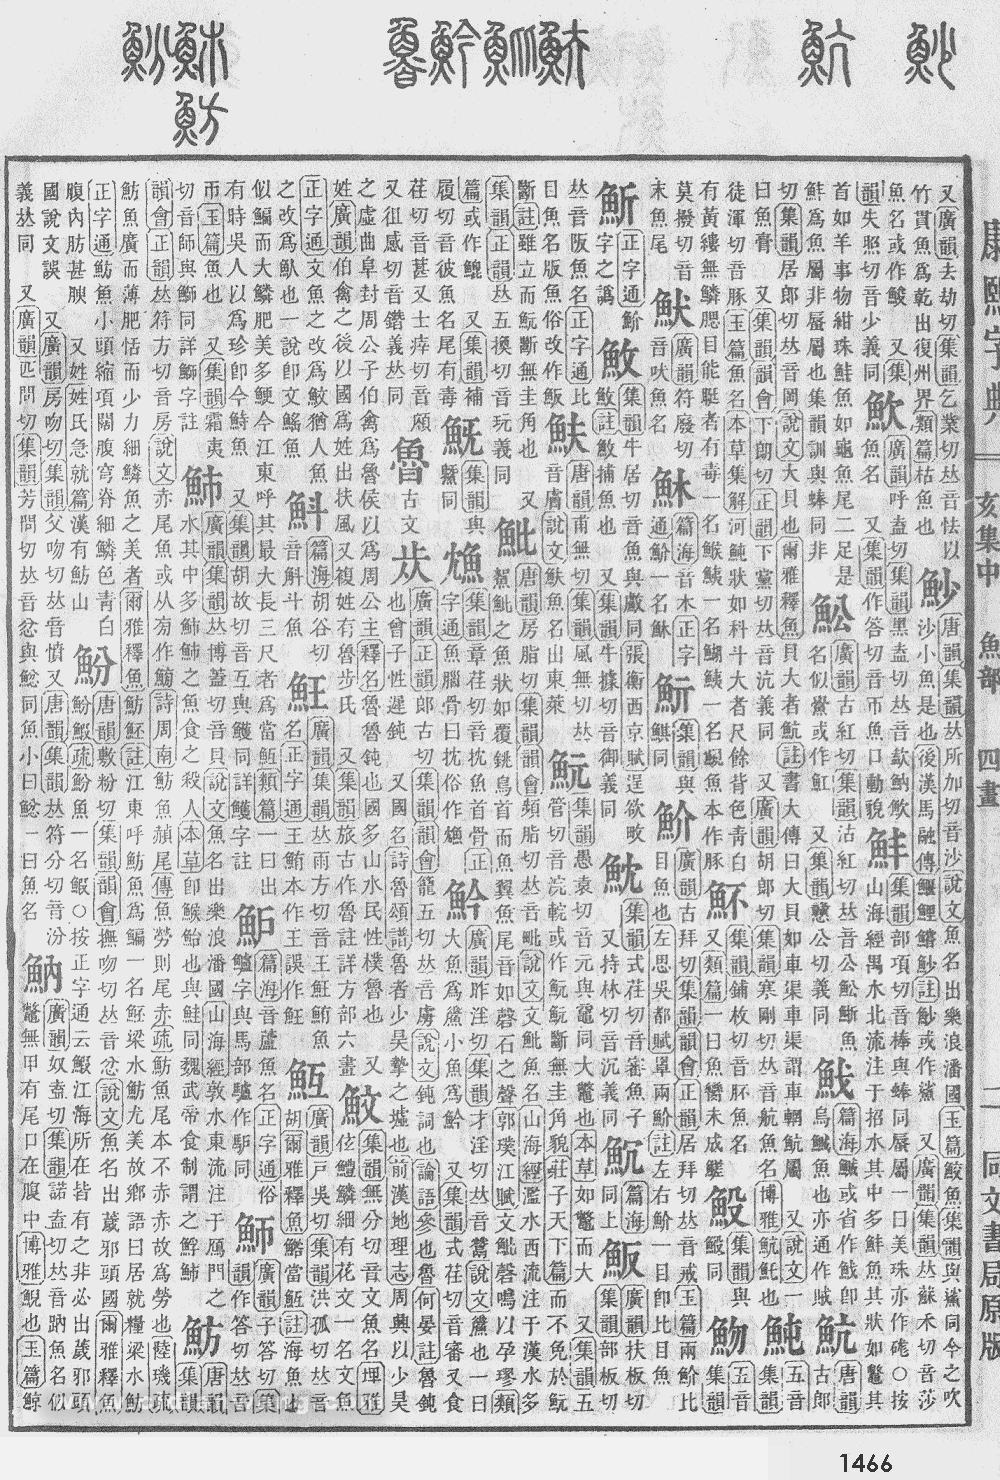 康熙字典掃描版第1466頁